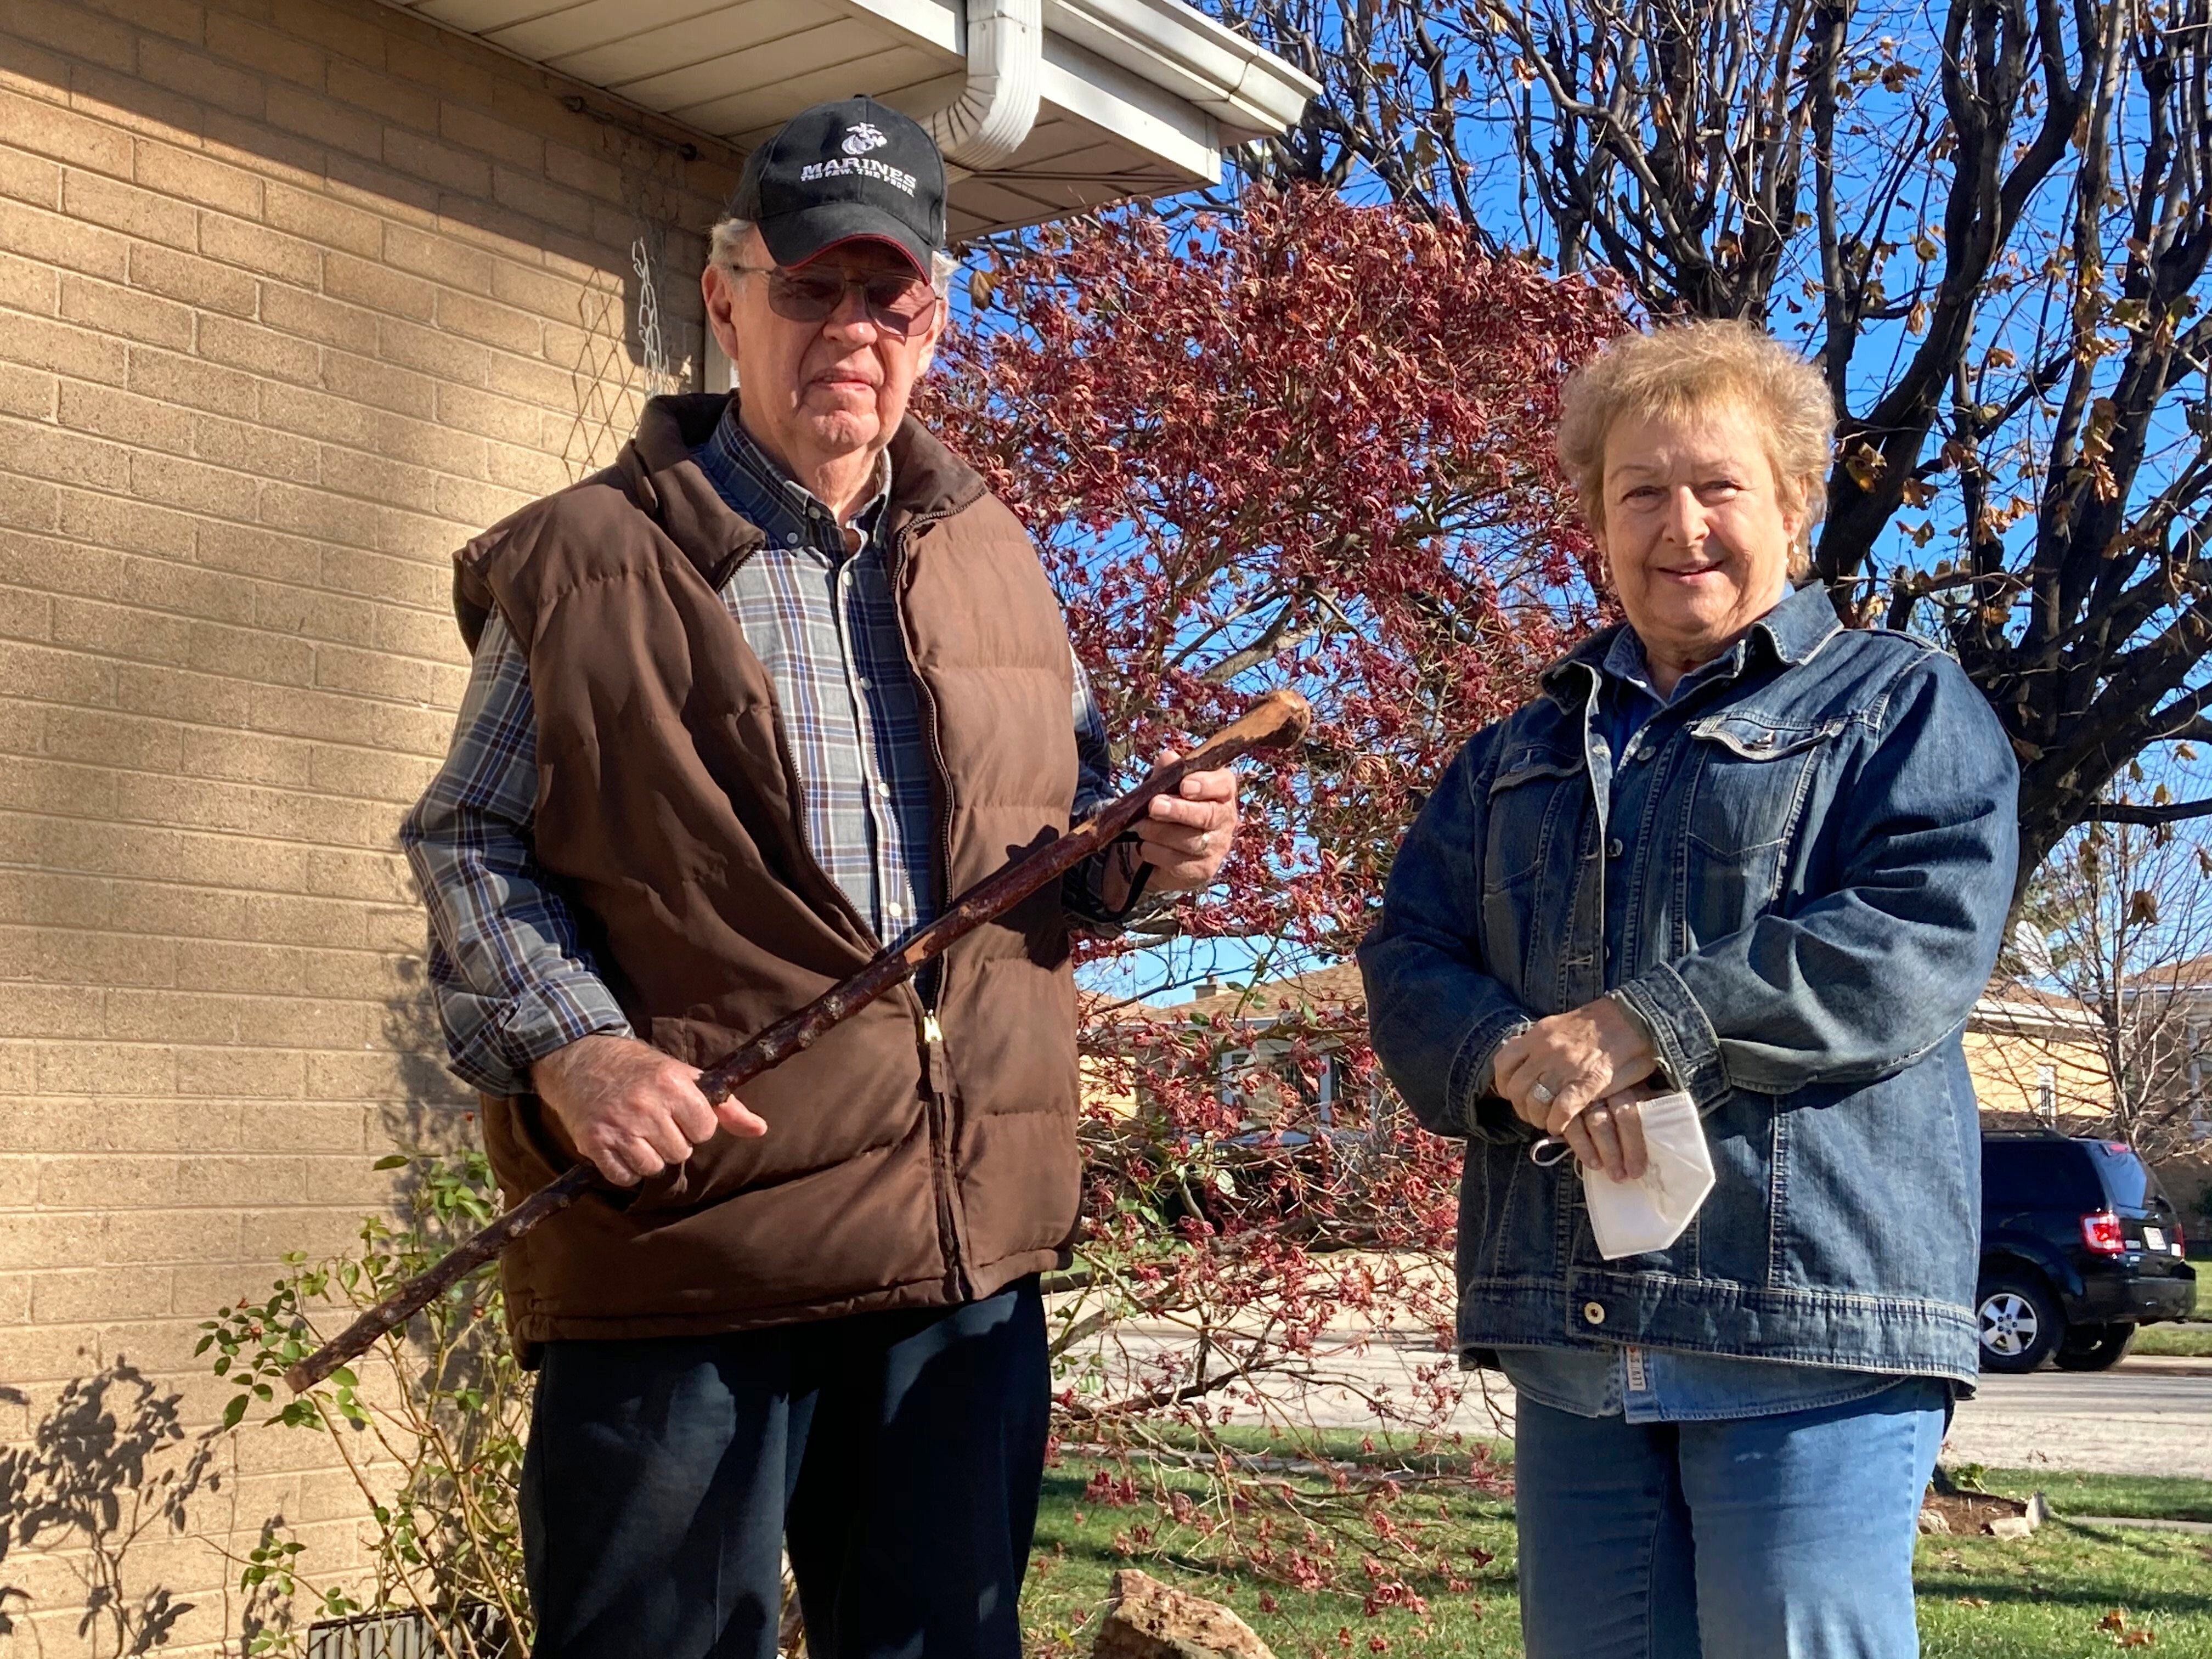 Dan Donovan, junto a su esposa Barbara, sostiene el bastón con el que expulsó a varios ladrones de su casa en Niles, Illinois, EEUU. Donovan, un ex marine de 81 años, utilizó el bastón de su abuelo para espantar a los ladrones, a uno de los cuales golpeó en la cabeza.